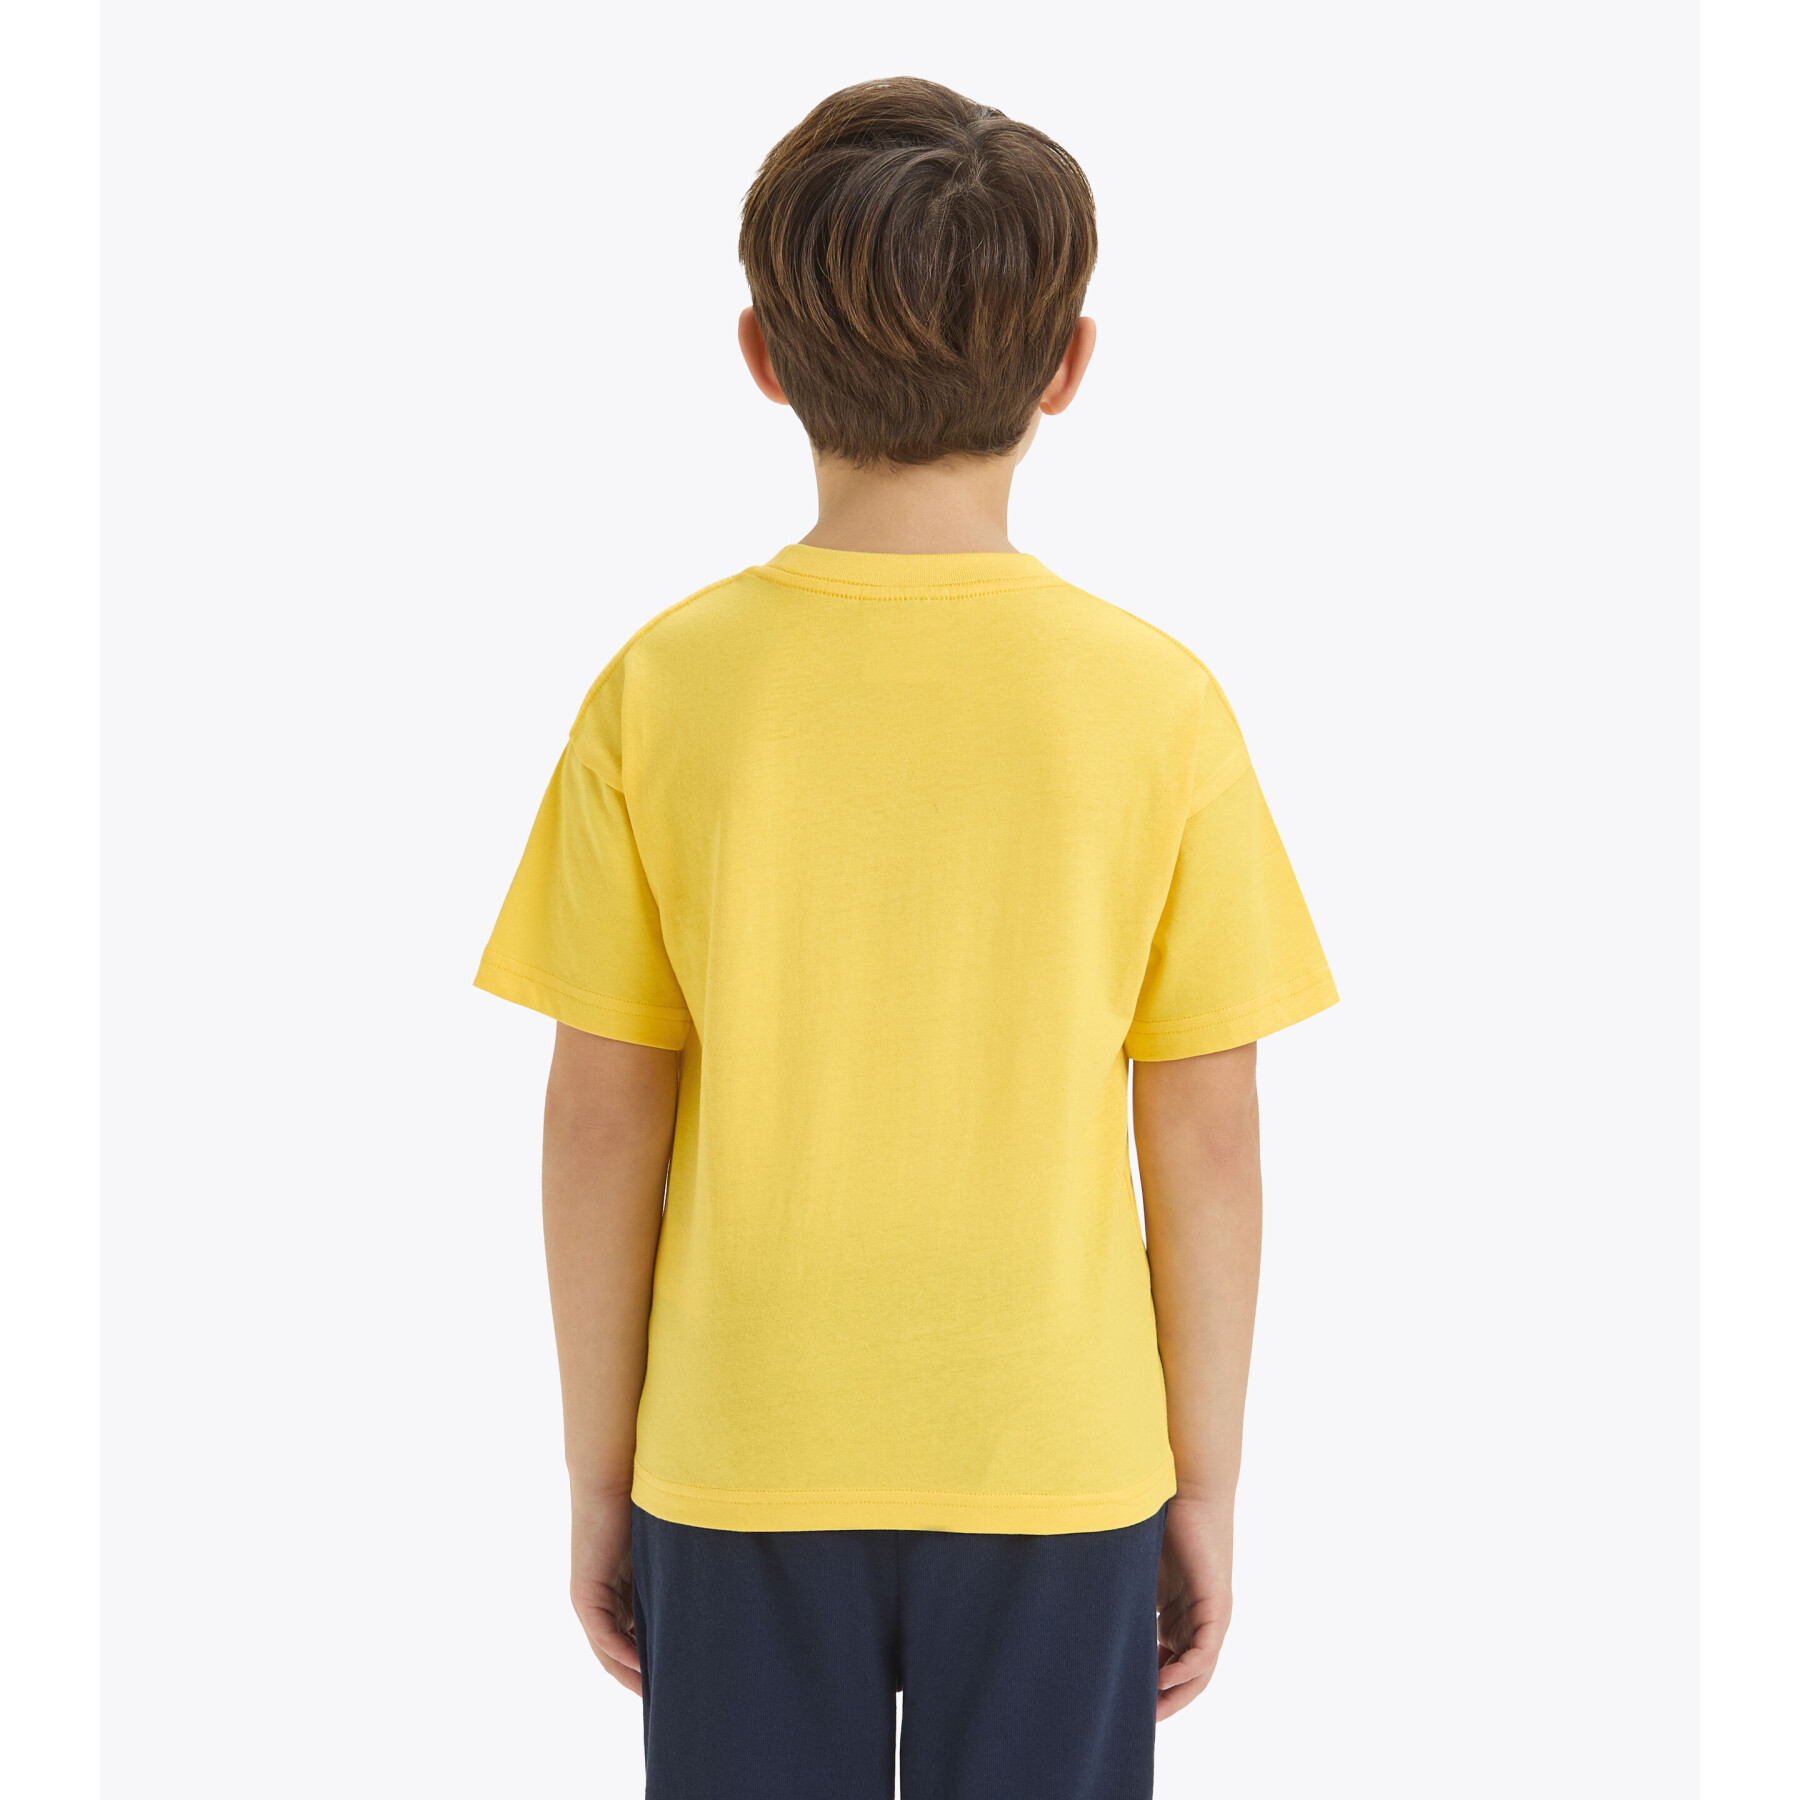 Kinder-T-shirt Diadora